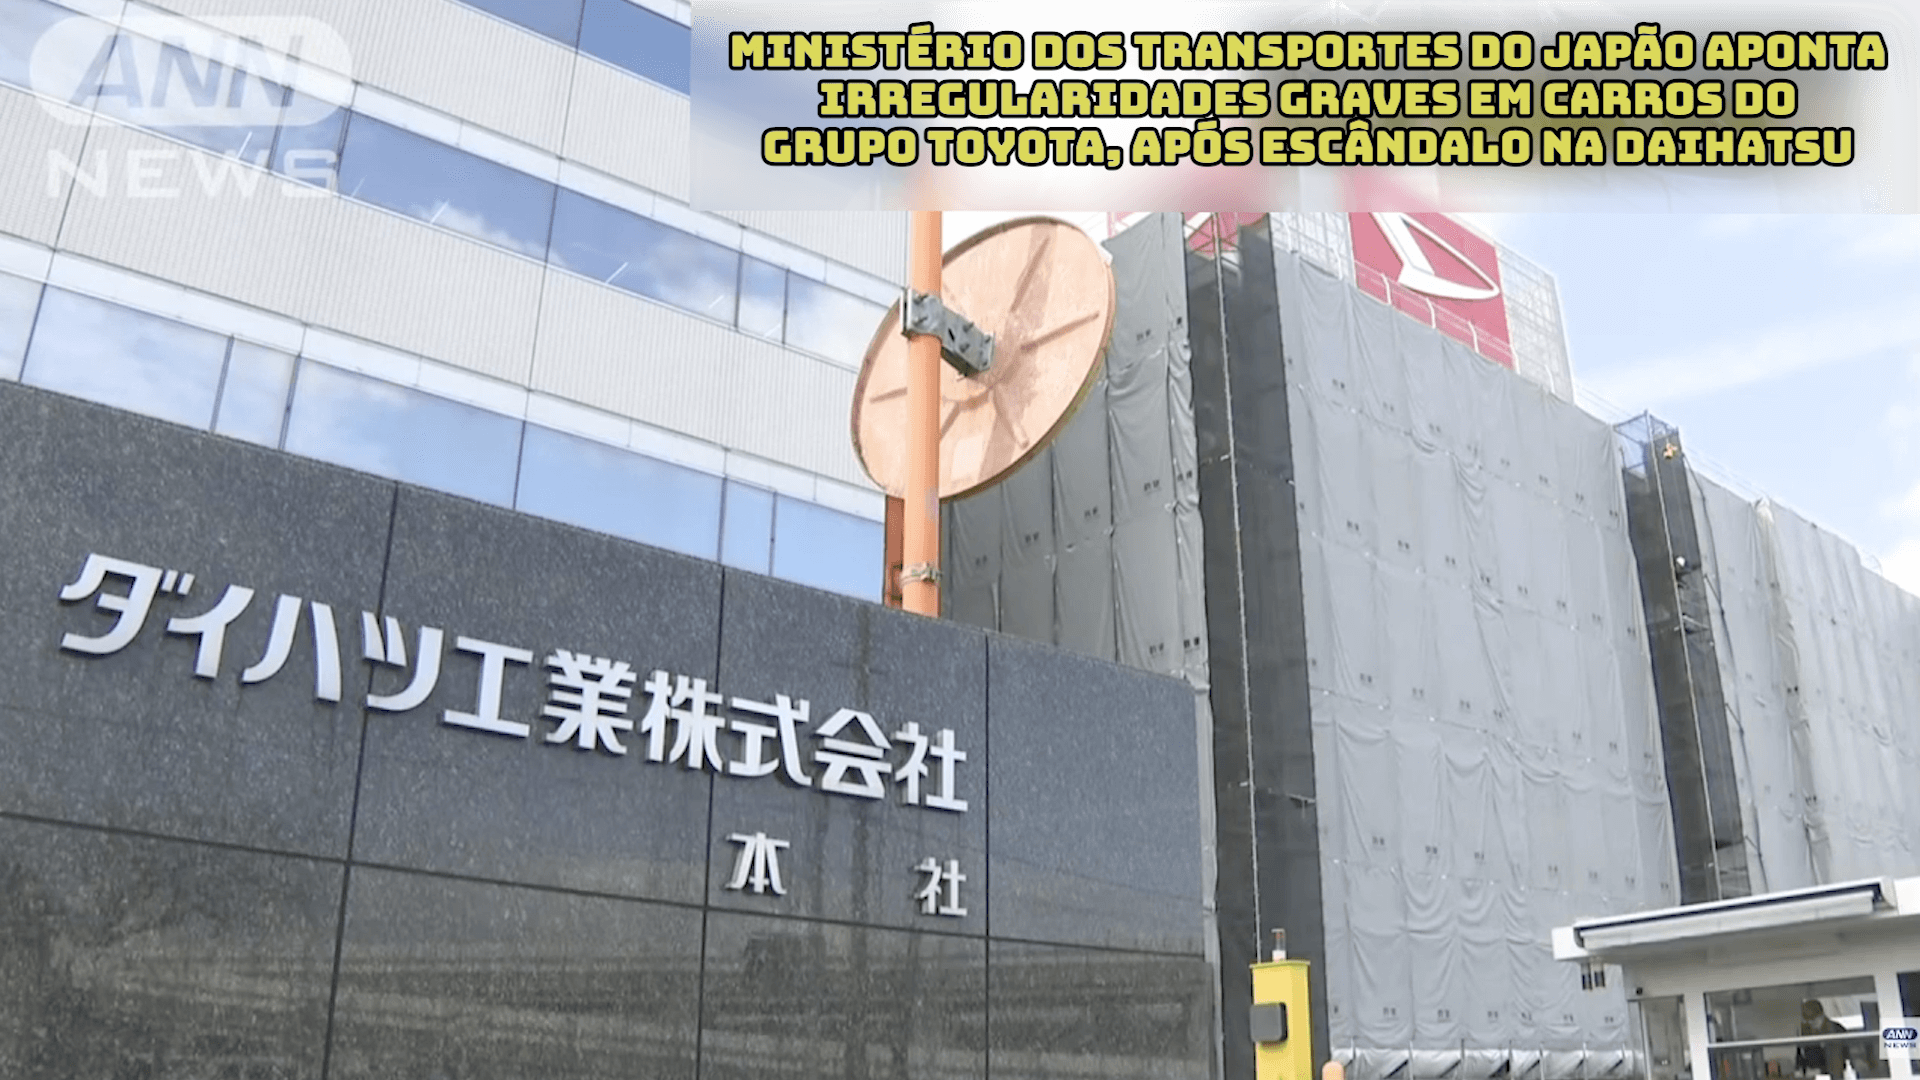 Ministério dos Transportes do Japão aponta irregularidades graves em carros do Grupo Toyota, após escândalo na Daihatsu 